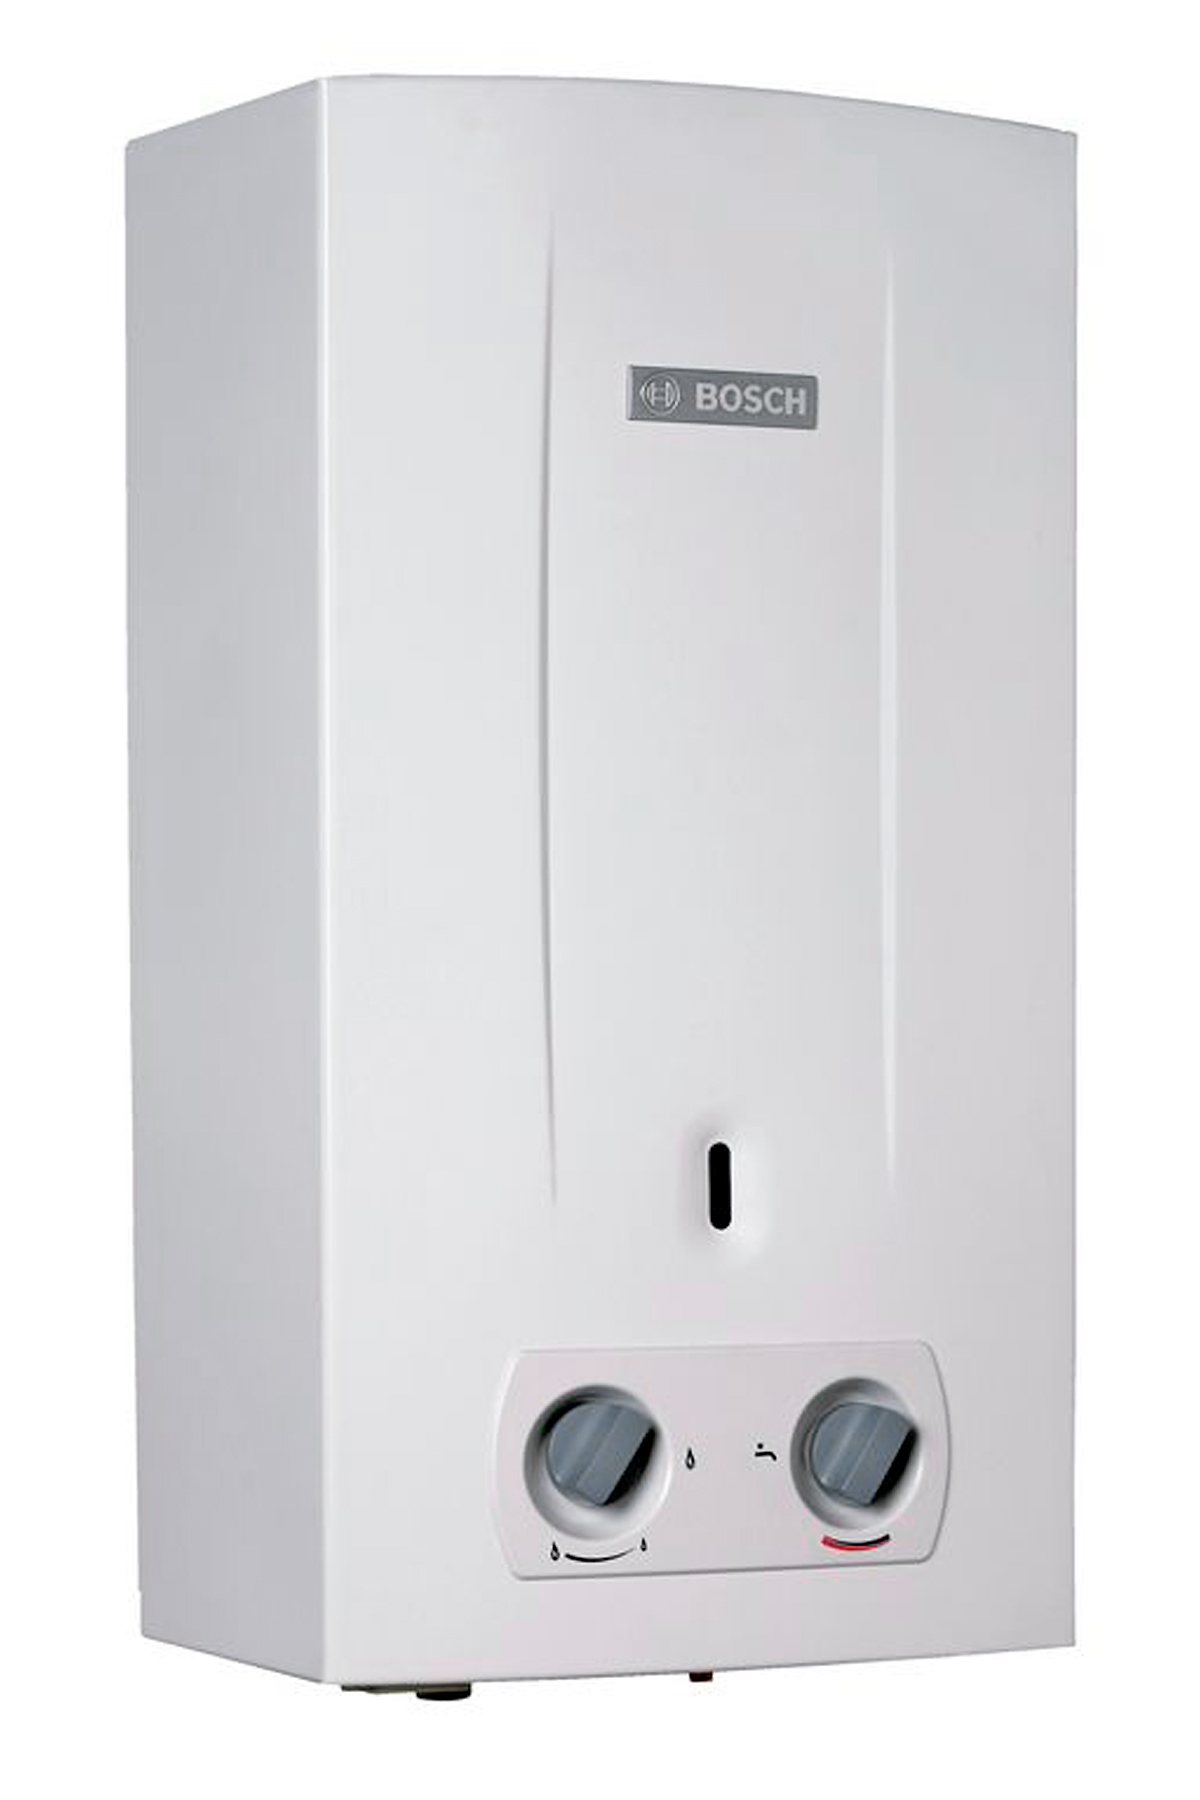 Характеристики газова колонка Bosch Therm 2000 O W 10 KB (7736500992)